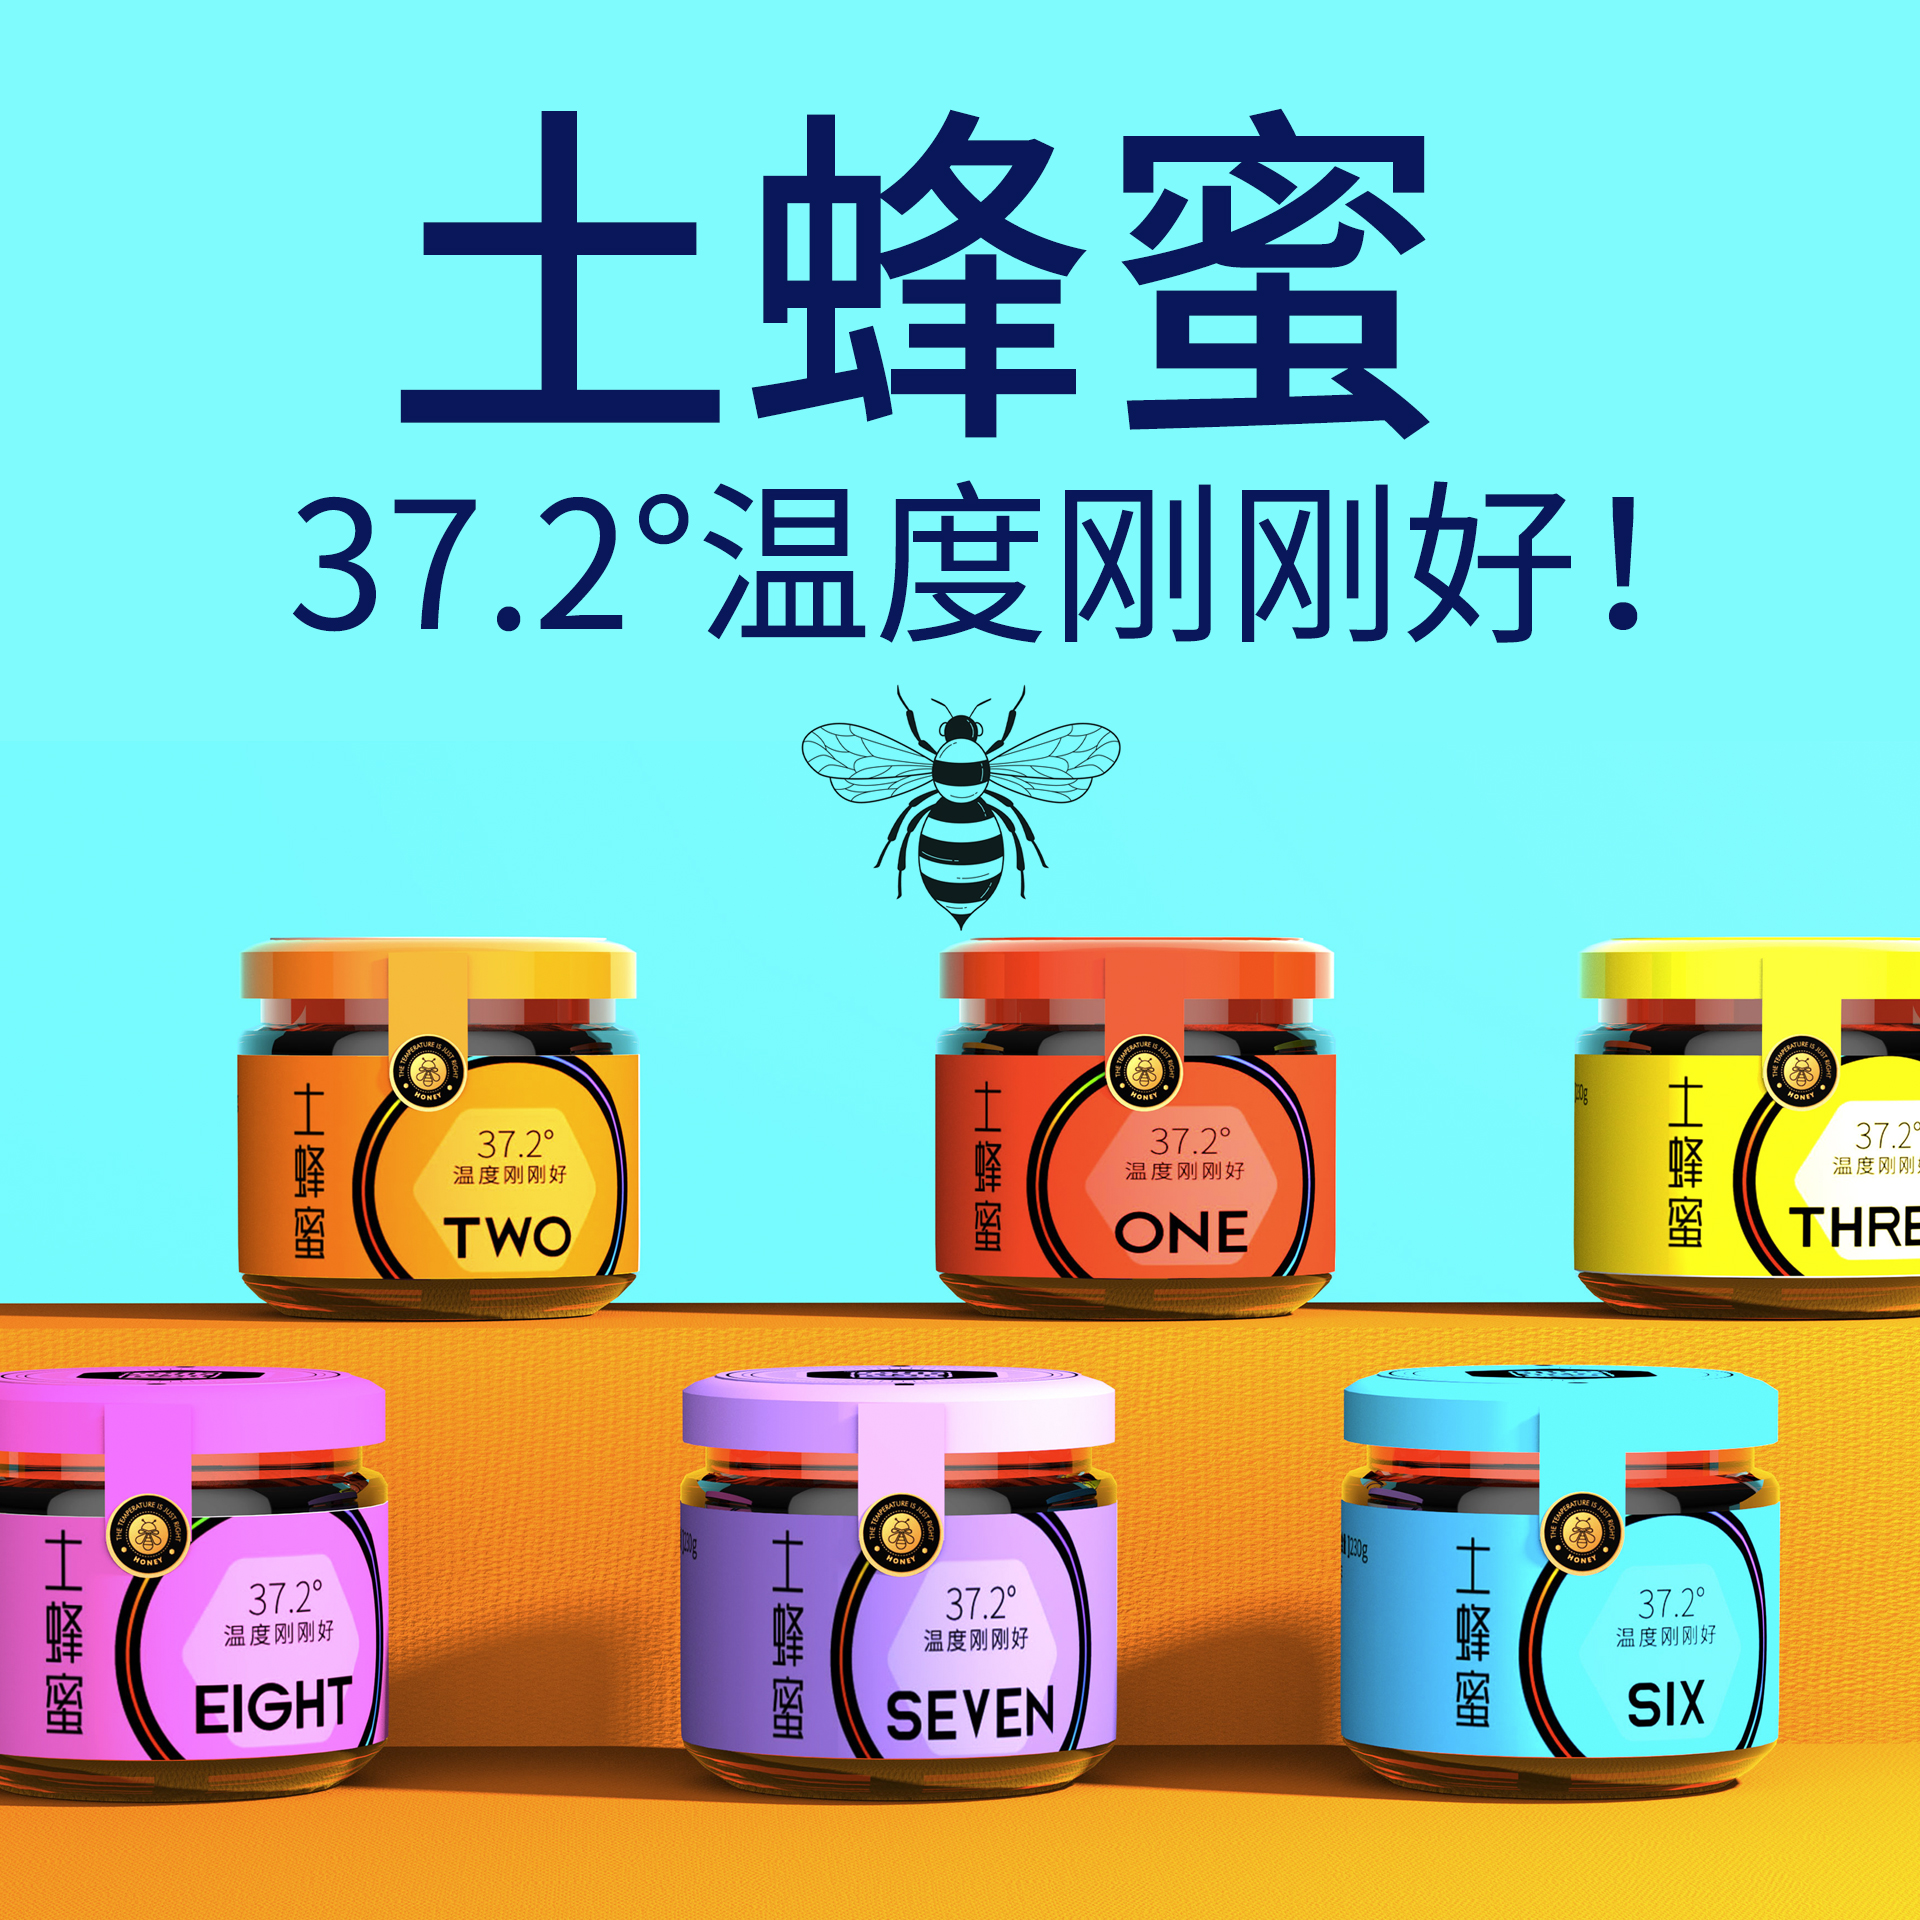 「峰鹤」土蜂蜜彩虹系列包装设计